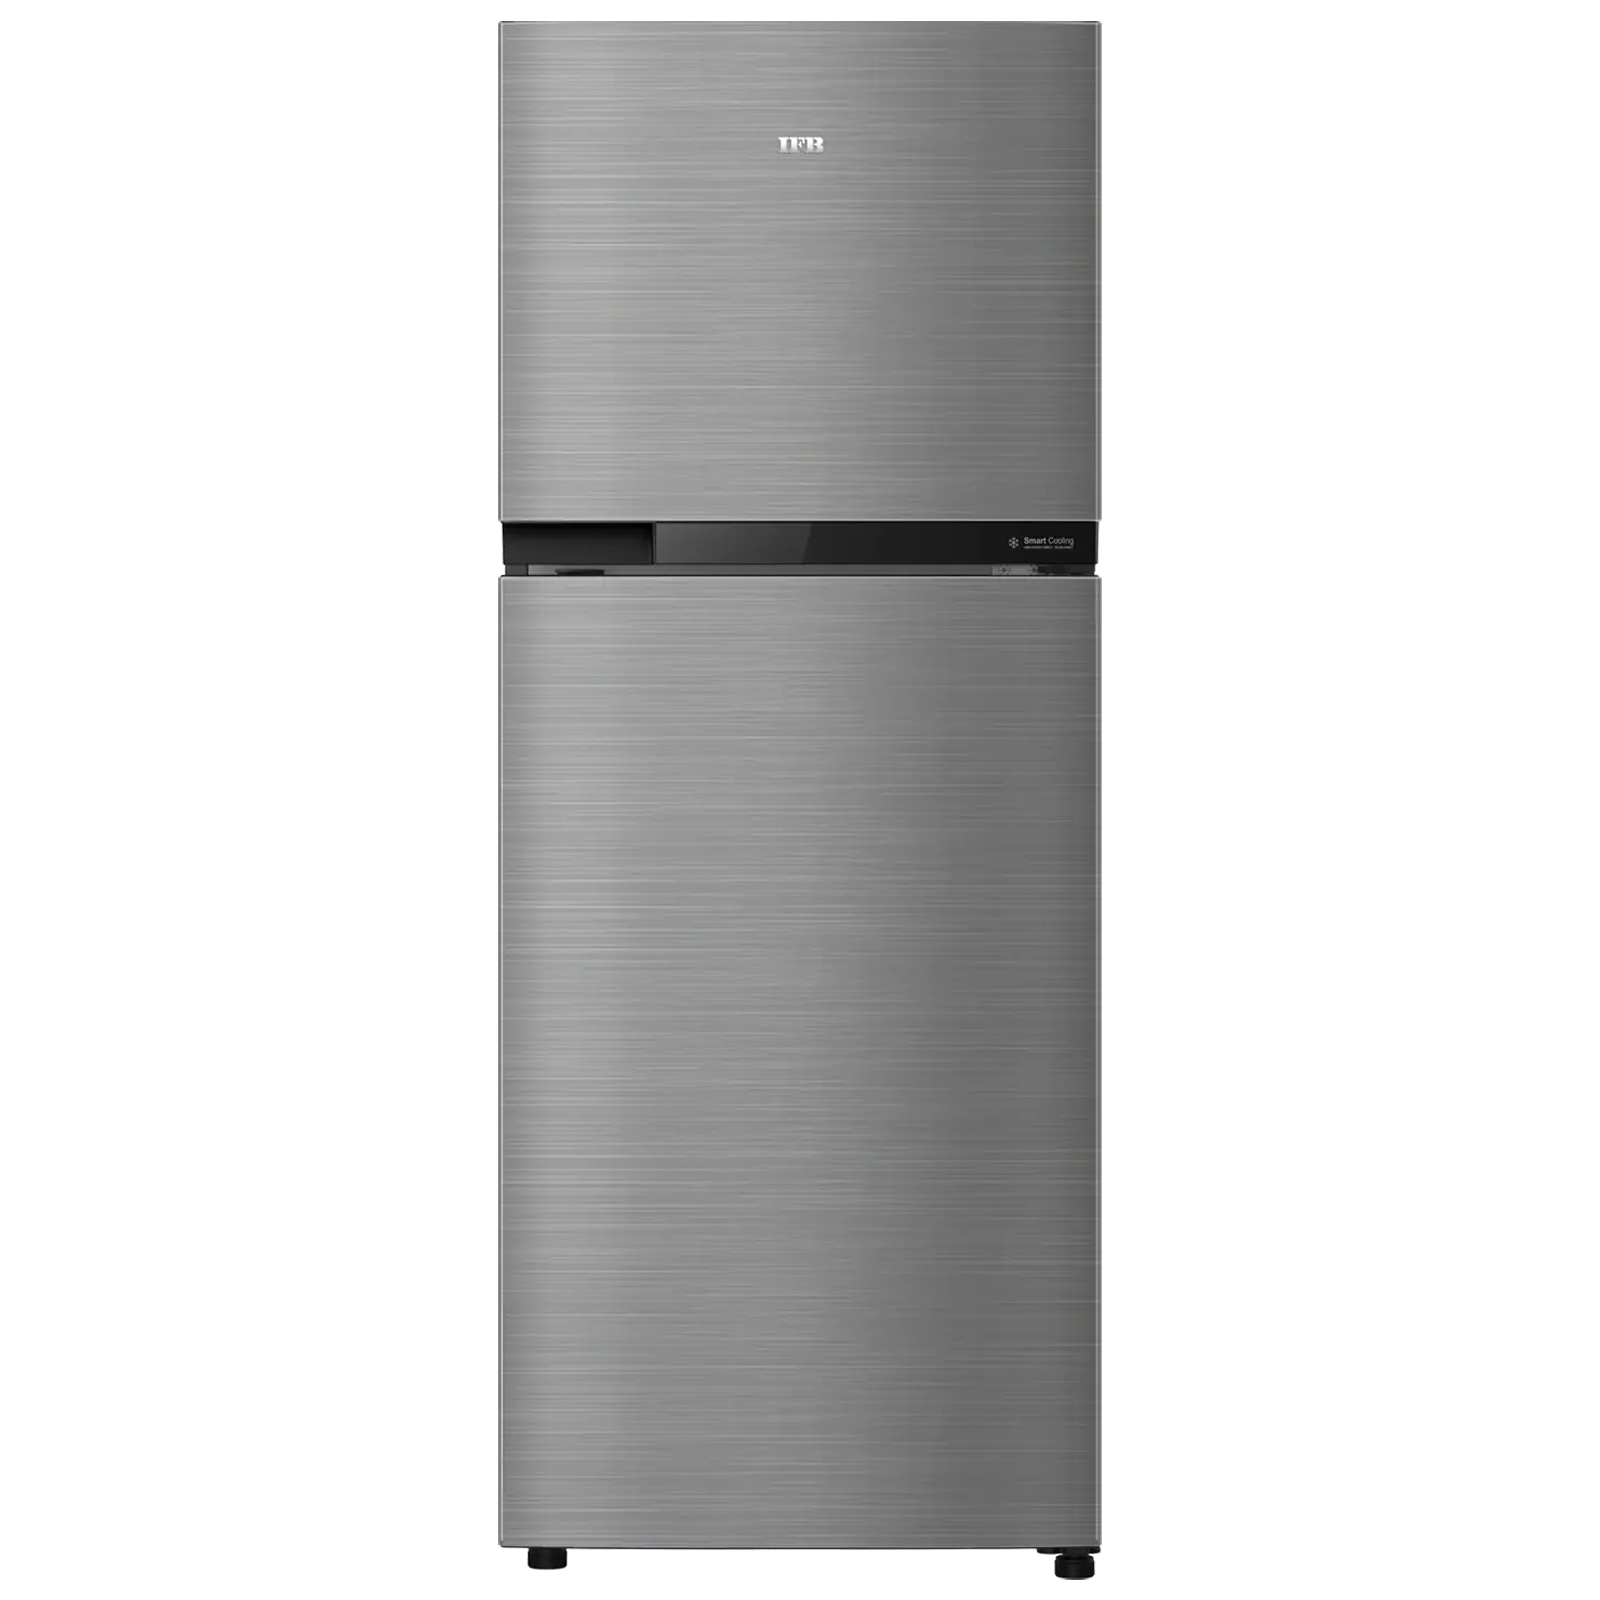 IFB Surround Cool 260 Litres 2 Star Frost Free Double Door Refrigerator with Antibacterial Gasket (IFBFF2902FBS, Grey Steel)